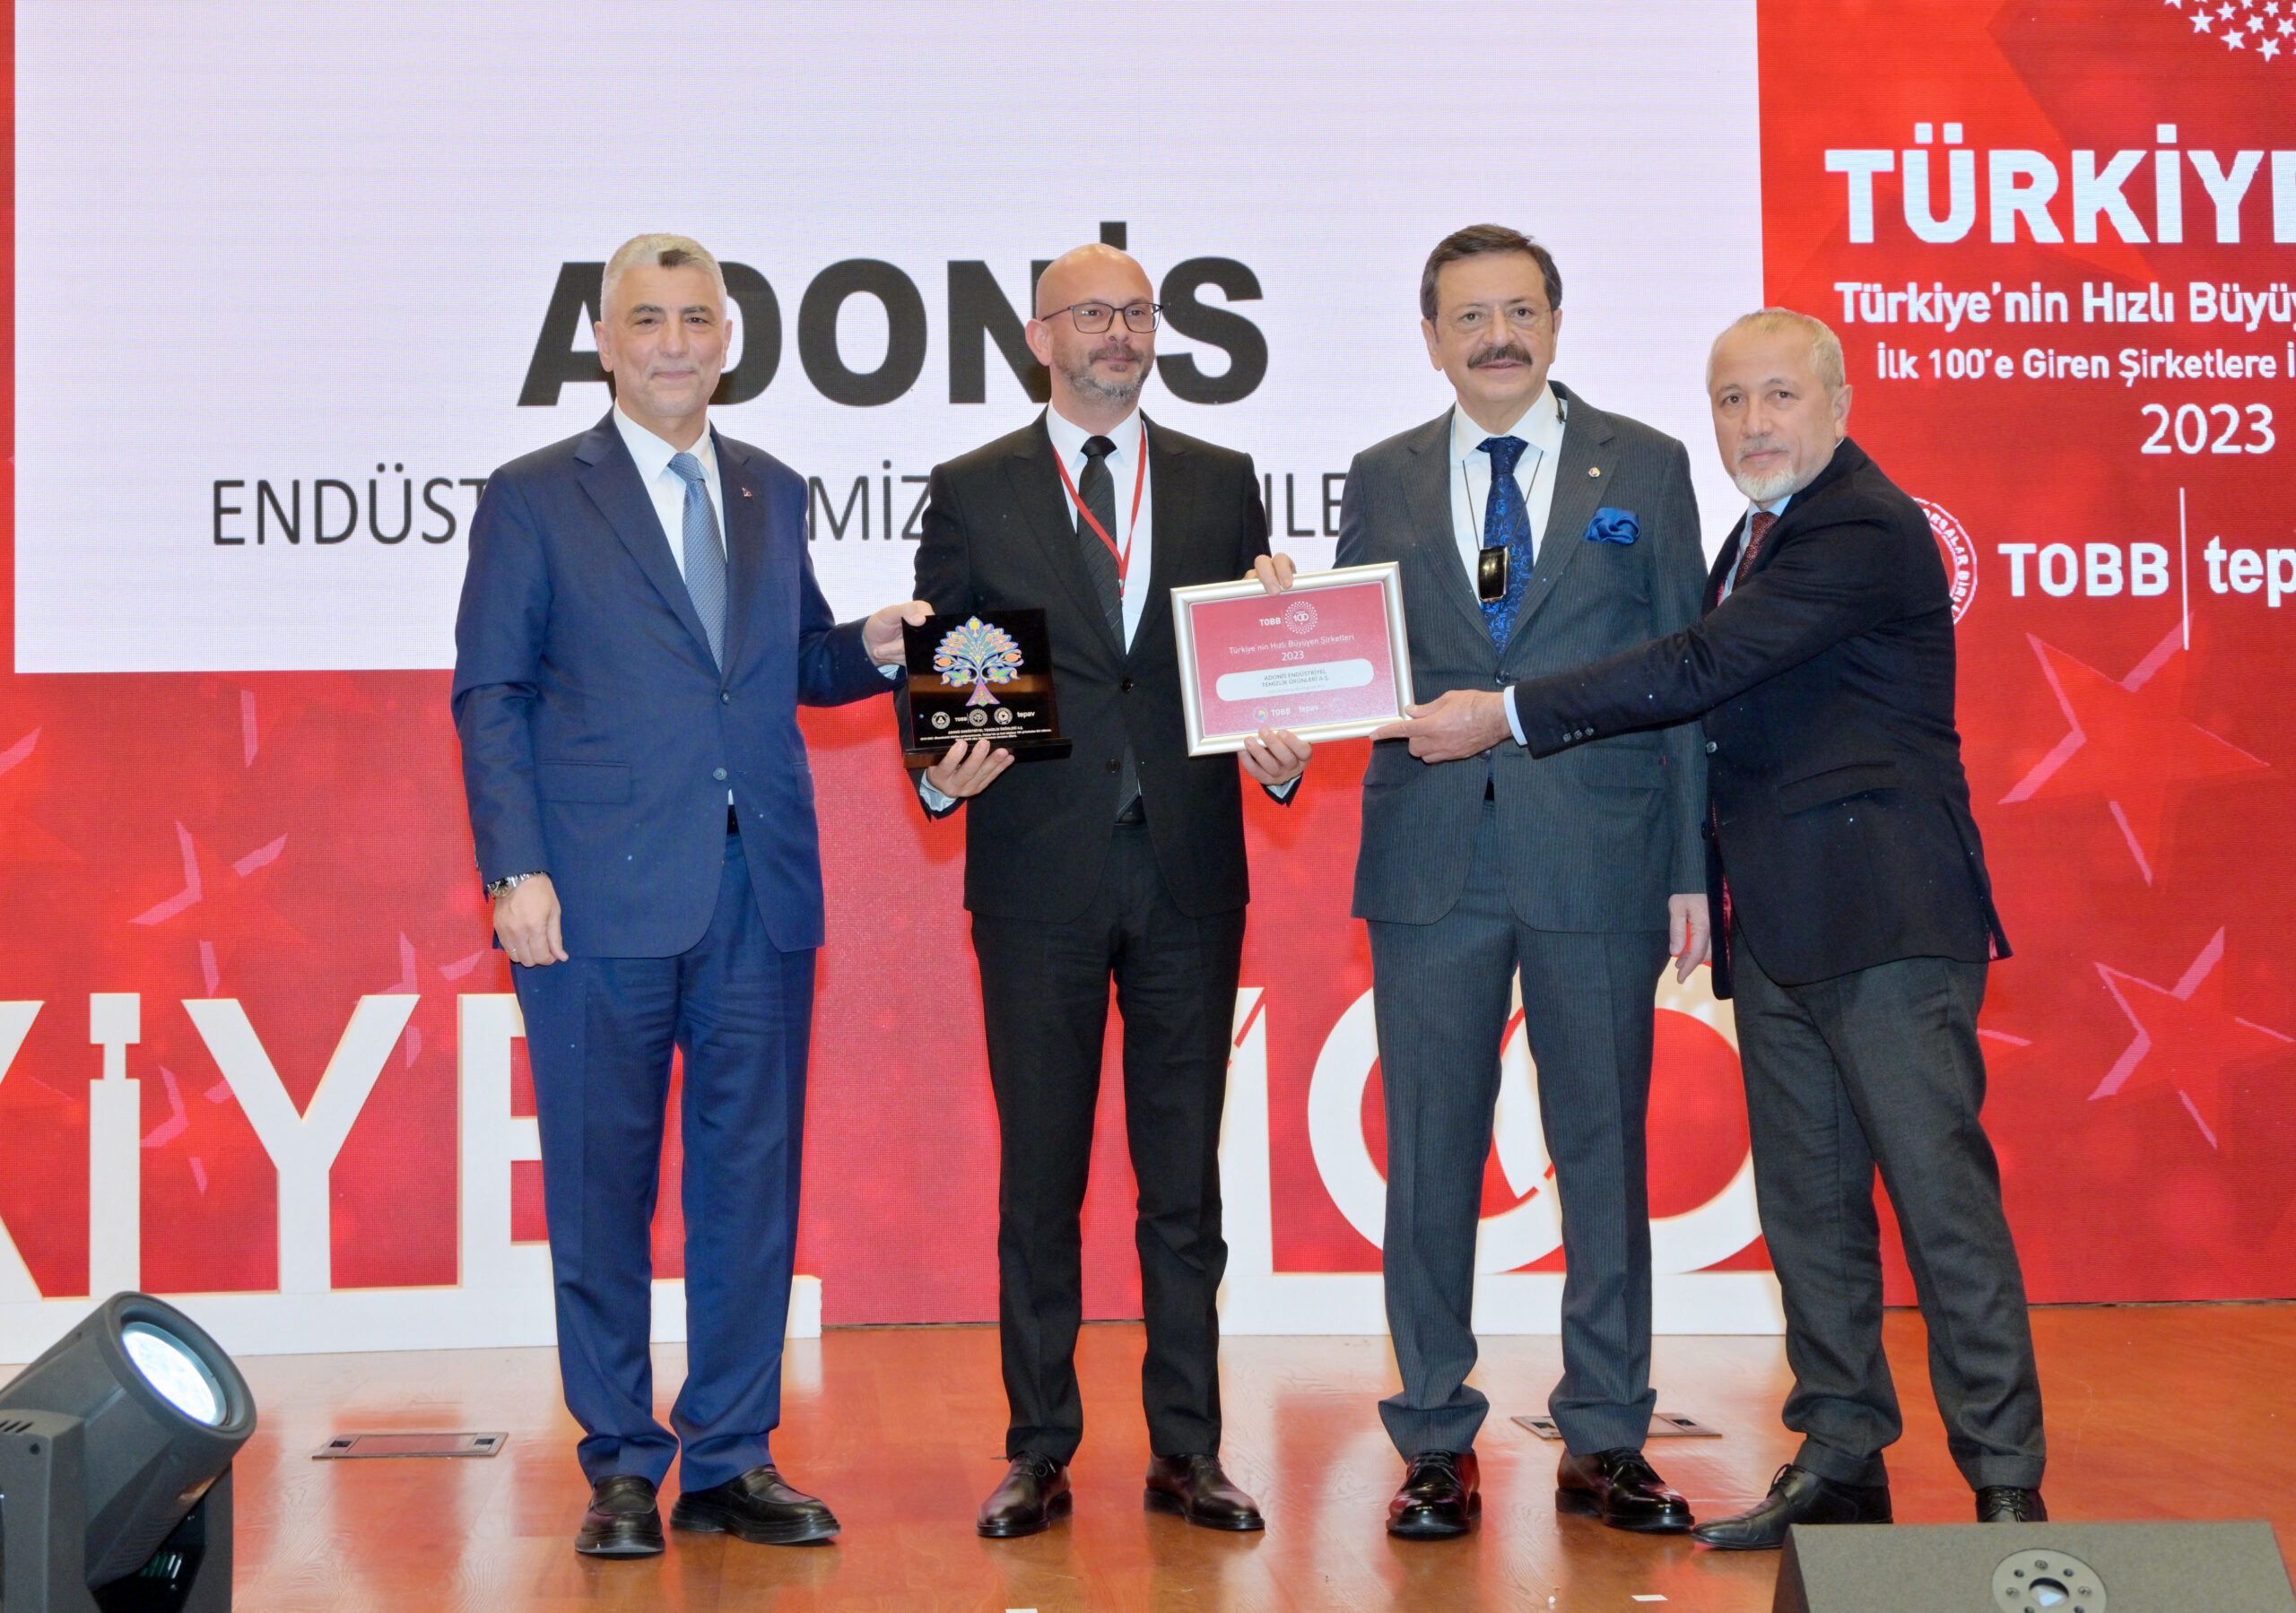 Adonis hızlı büyümesiyle TOBB Türkiye 100 listesine girdi